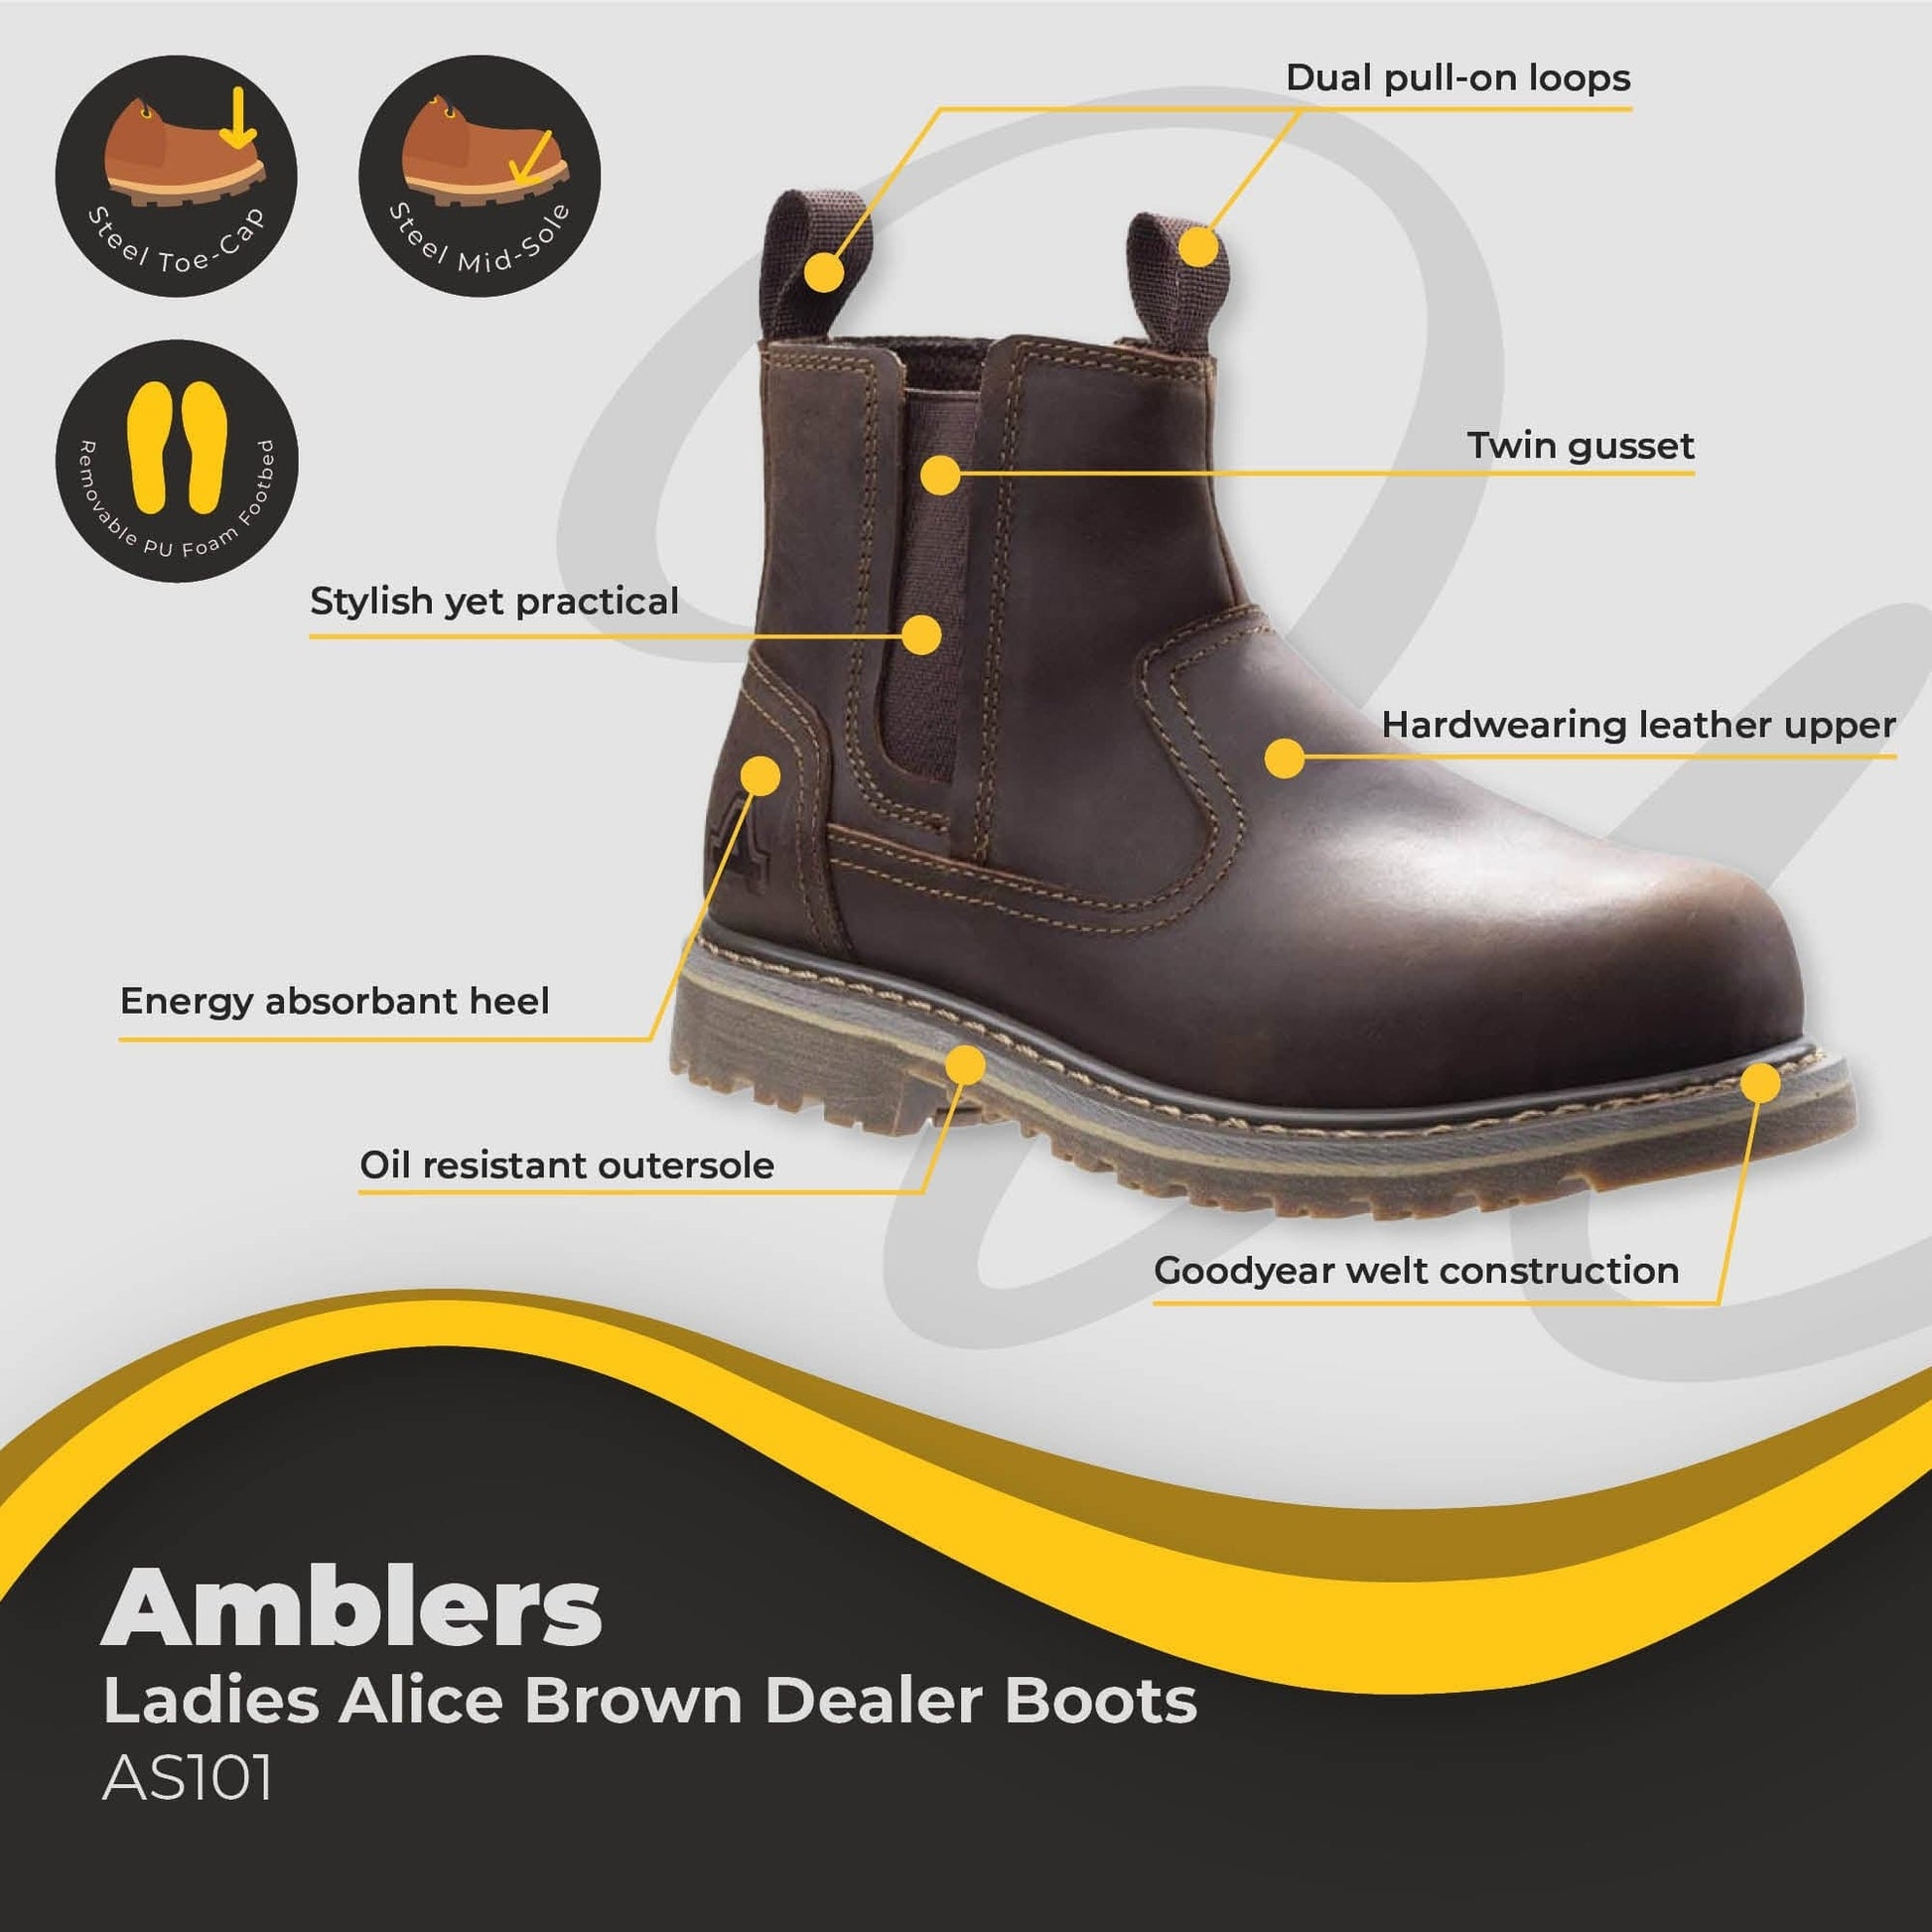 amblers alice ladies brown dealer boot as101 dd318 03 boot